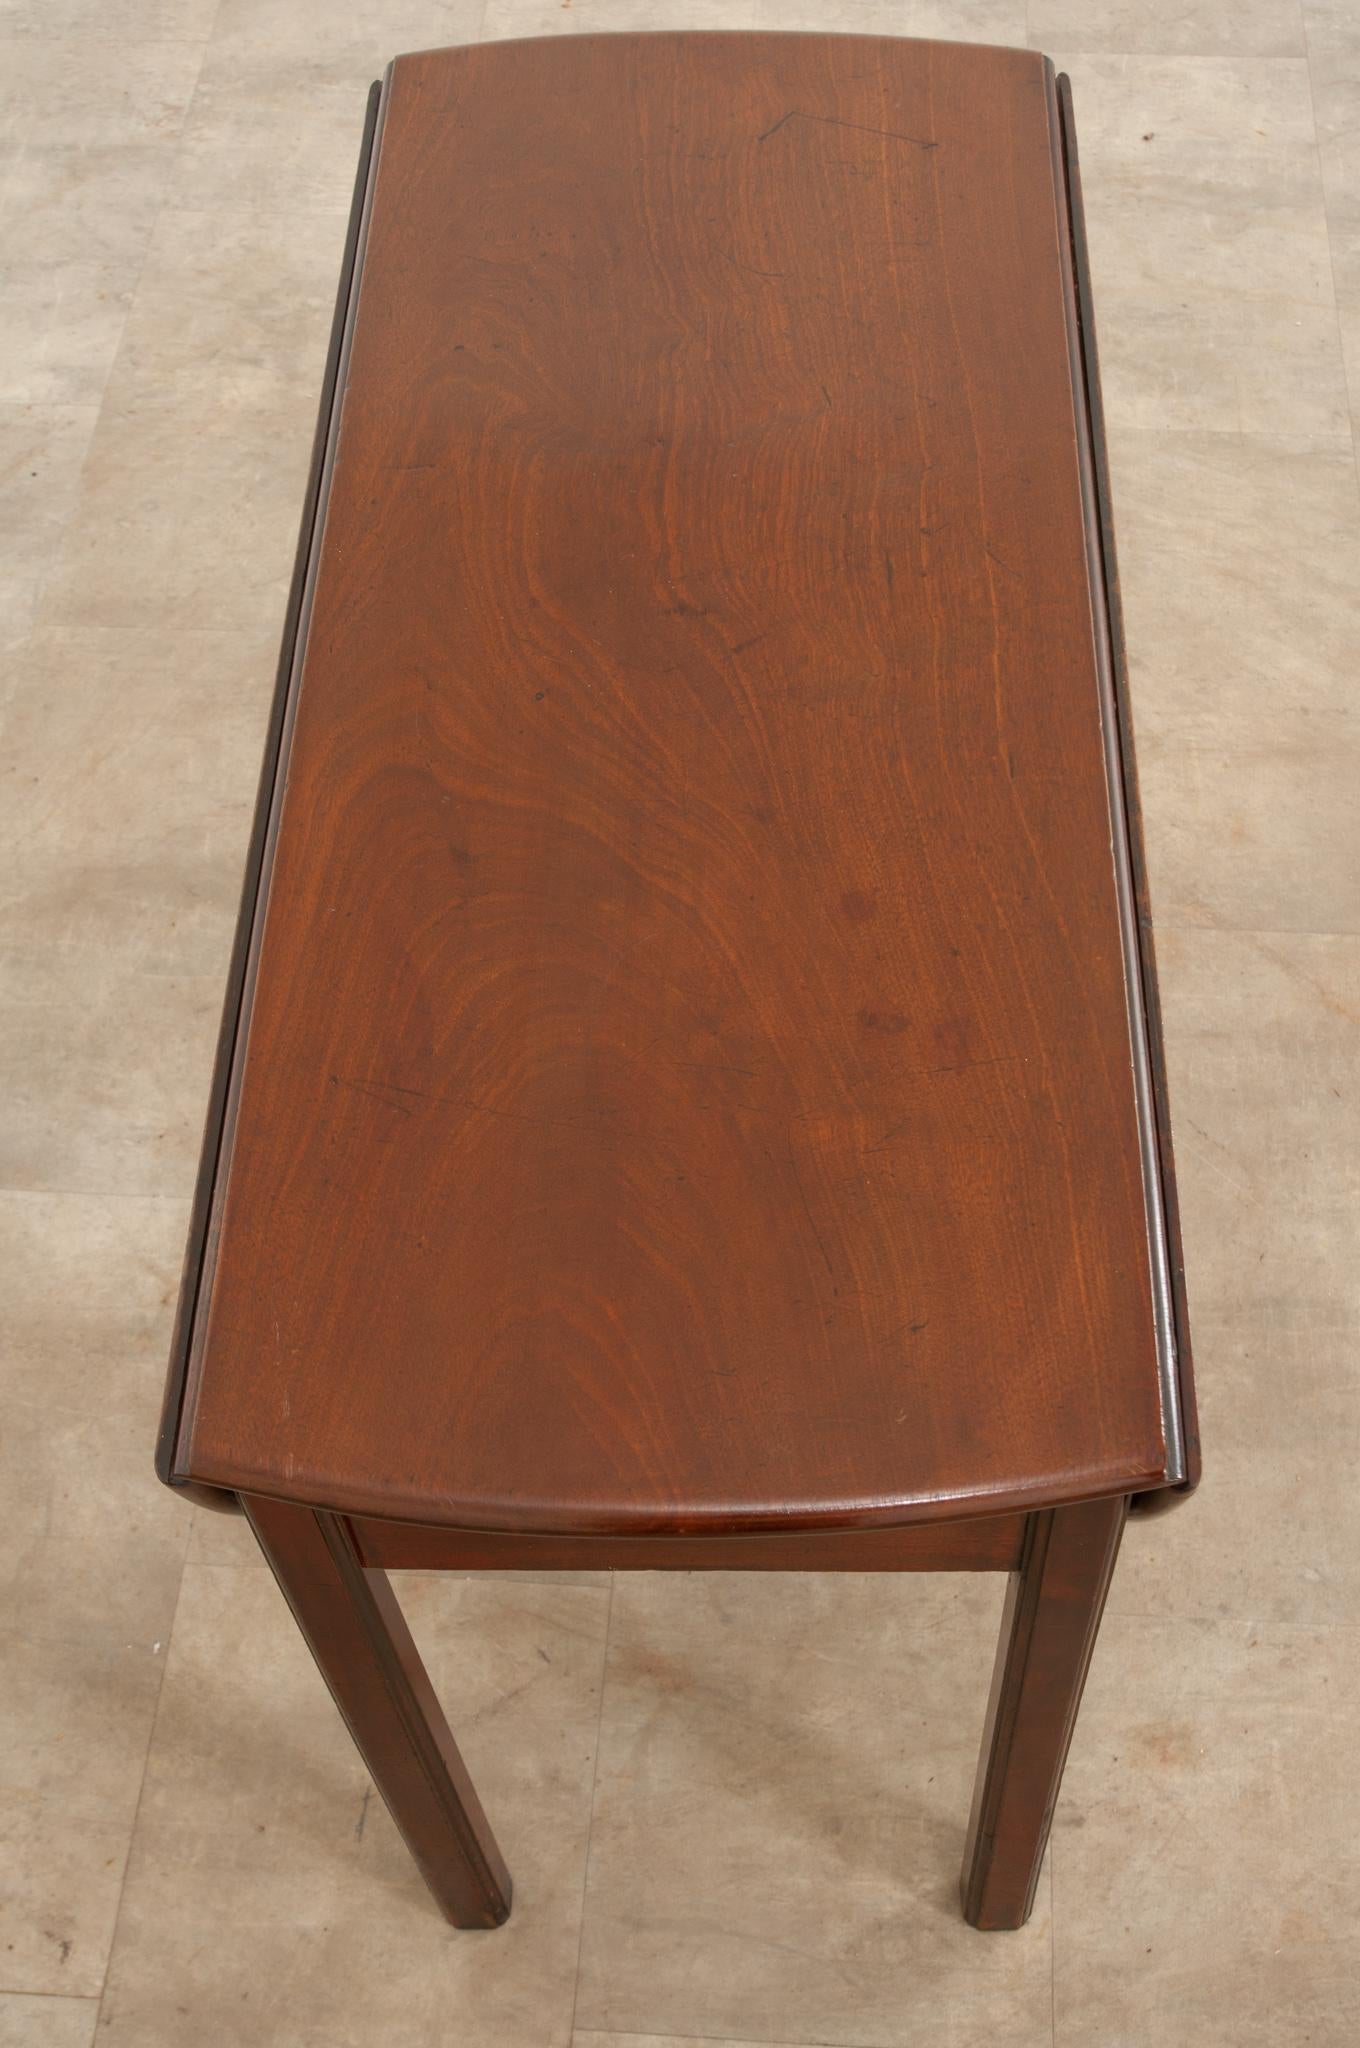 Une fantastique table à feuilles tombantes en acajou anglais, fabriquée vers 1840. La table possède deux grandes feuilles en forme de demilune qui, lorsqu'elles sont abaissées, se placent sur les côtés de la table. Pour déployer le plateau et